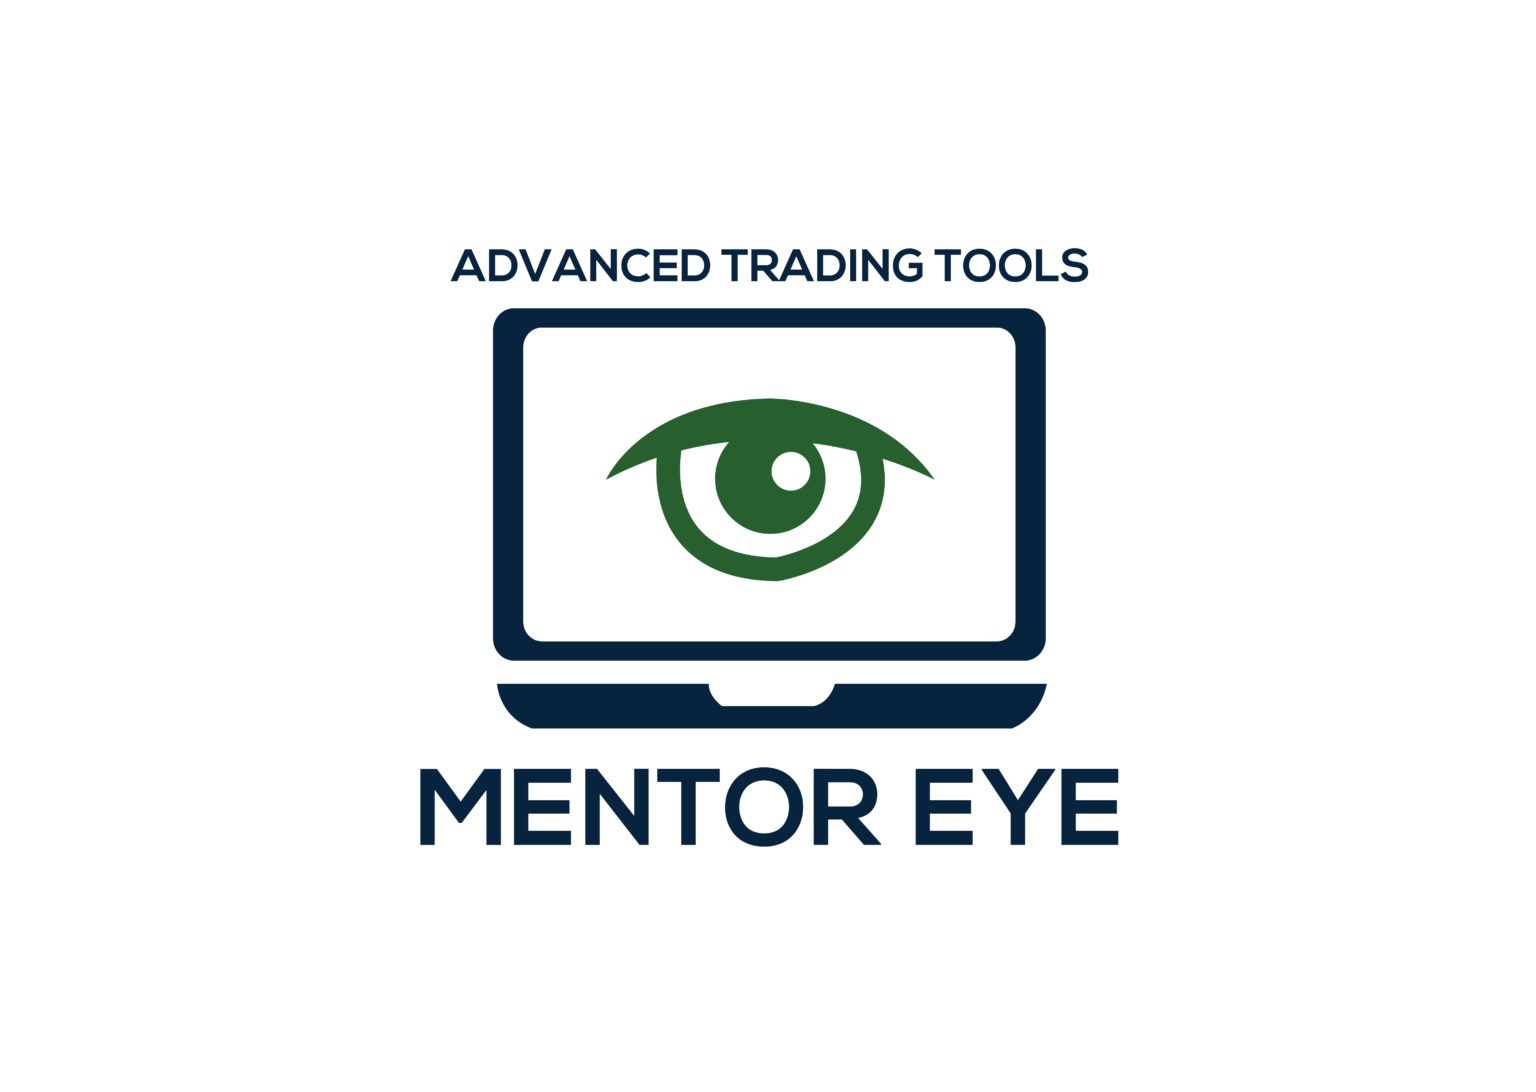 ATT Mentor Eye (MT4) – advancedtradingtools.net